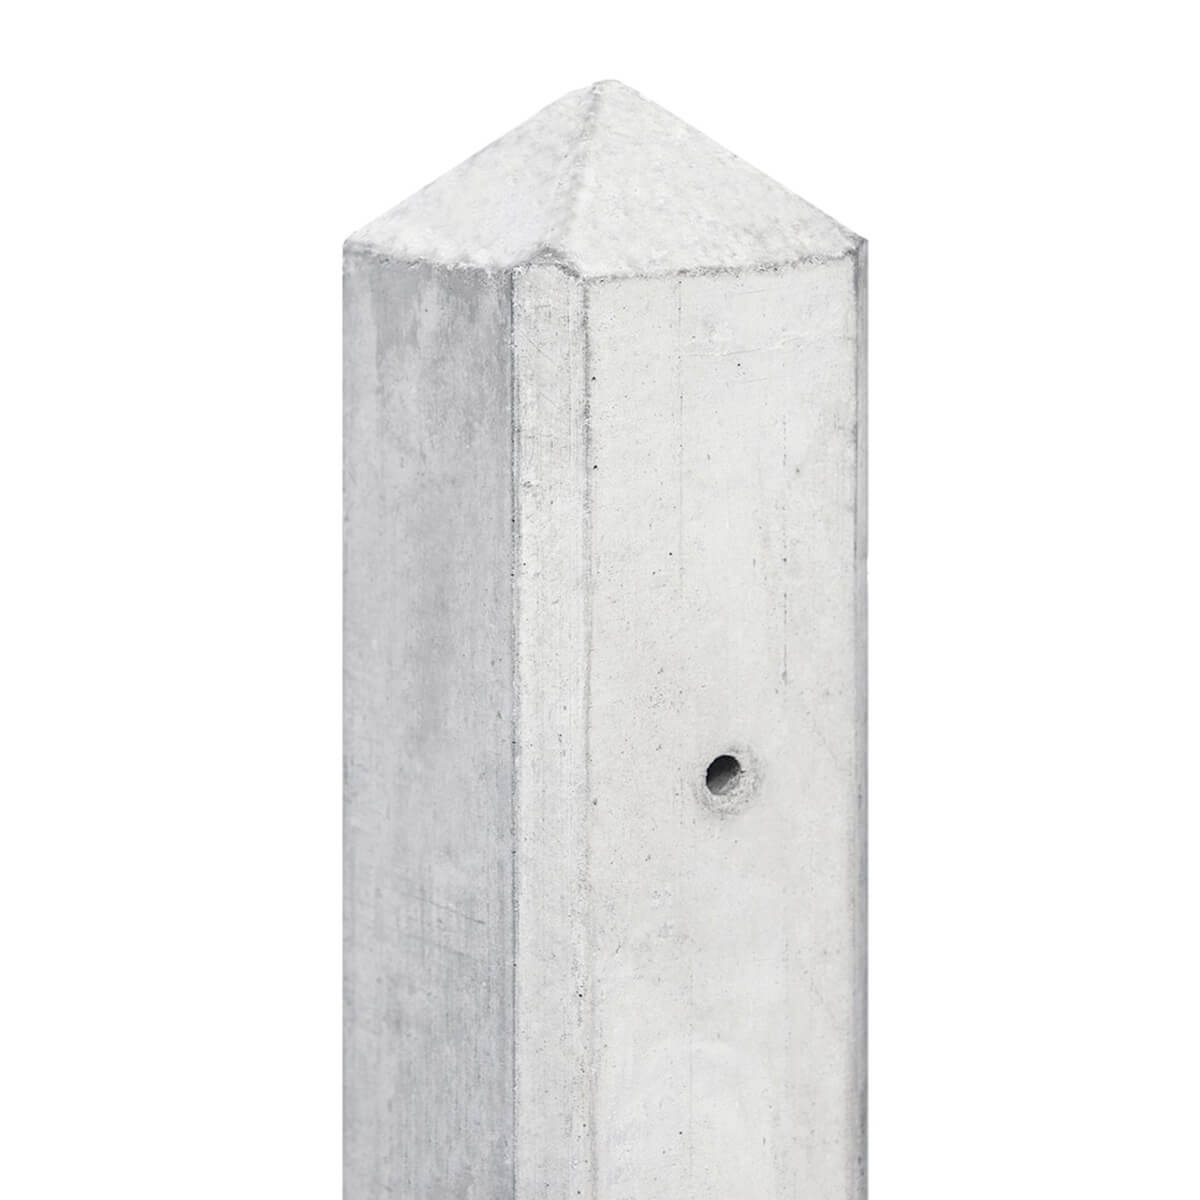 Zichtbaar herwinnen beest Schutting betonpaal - Glad - Premium wit/grijs - 10x10 cm - Tuingigant.com